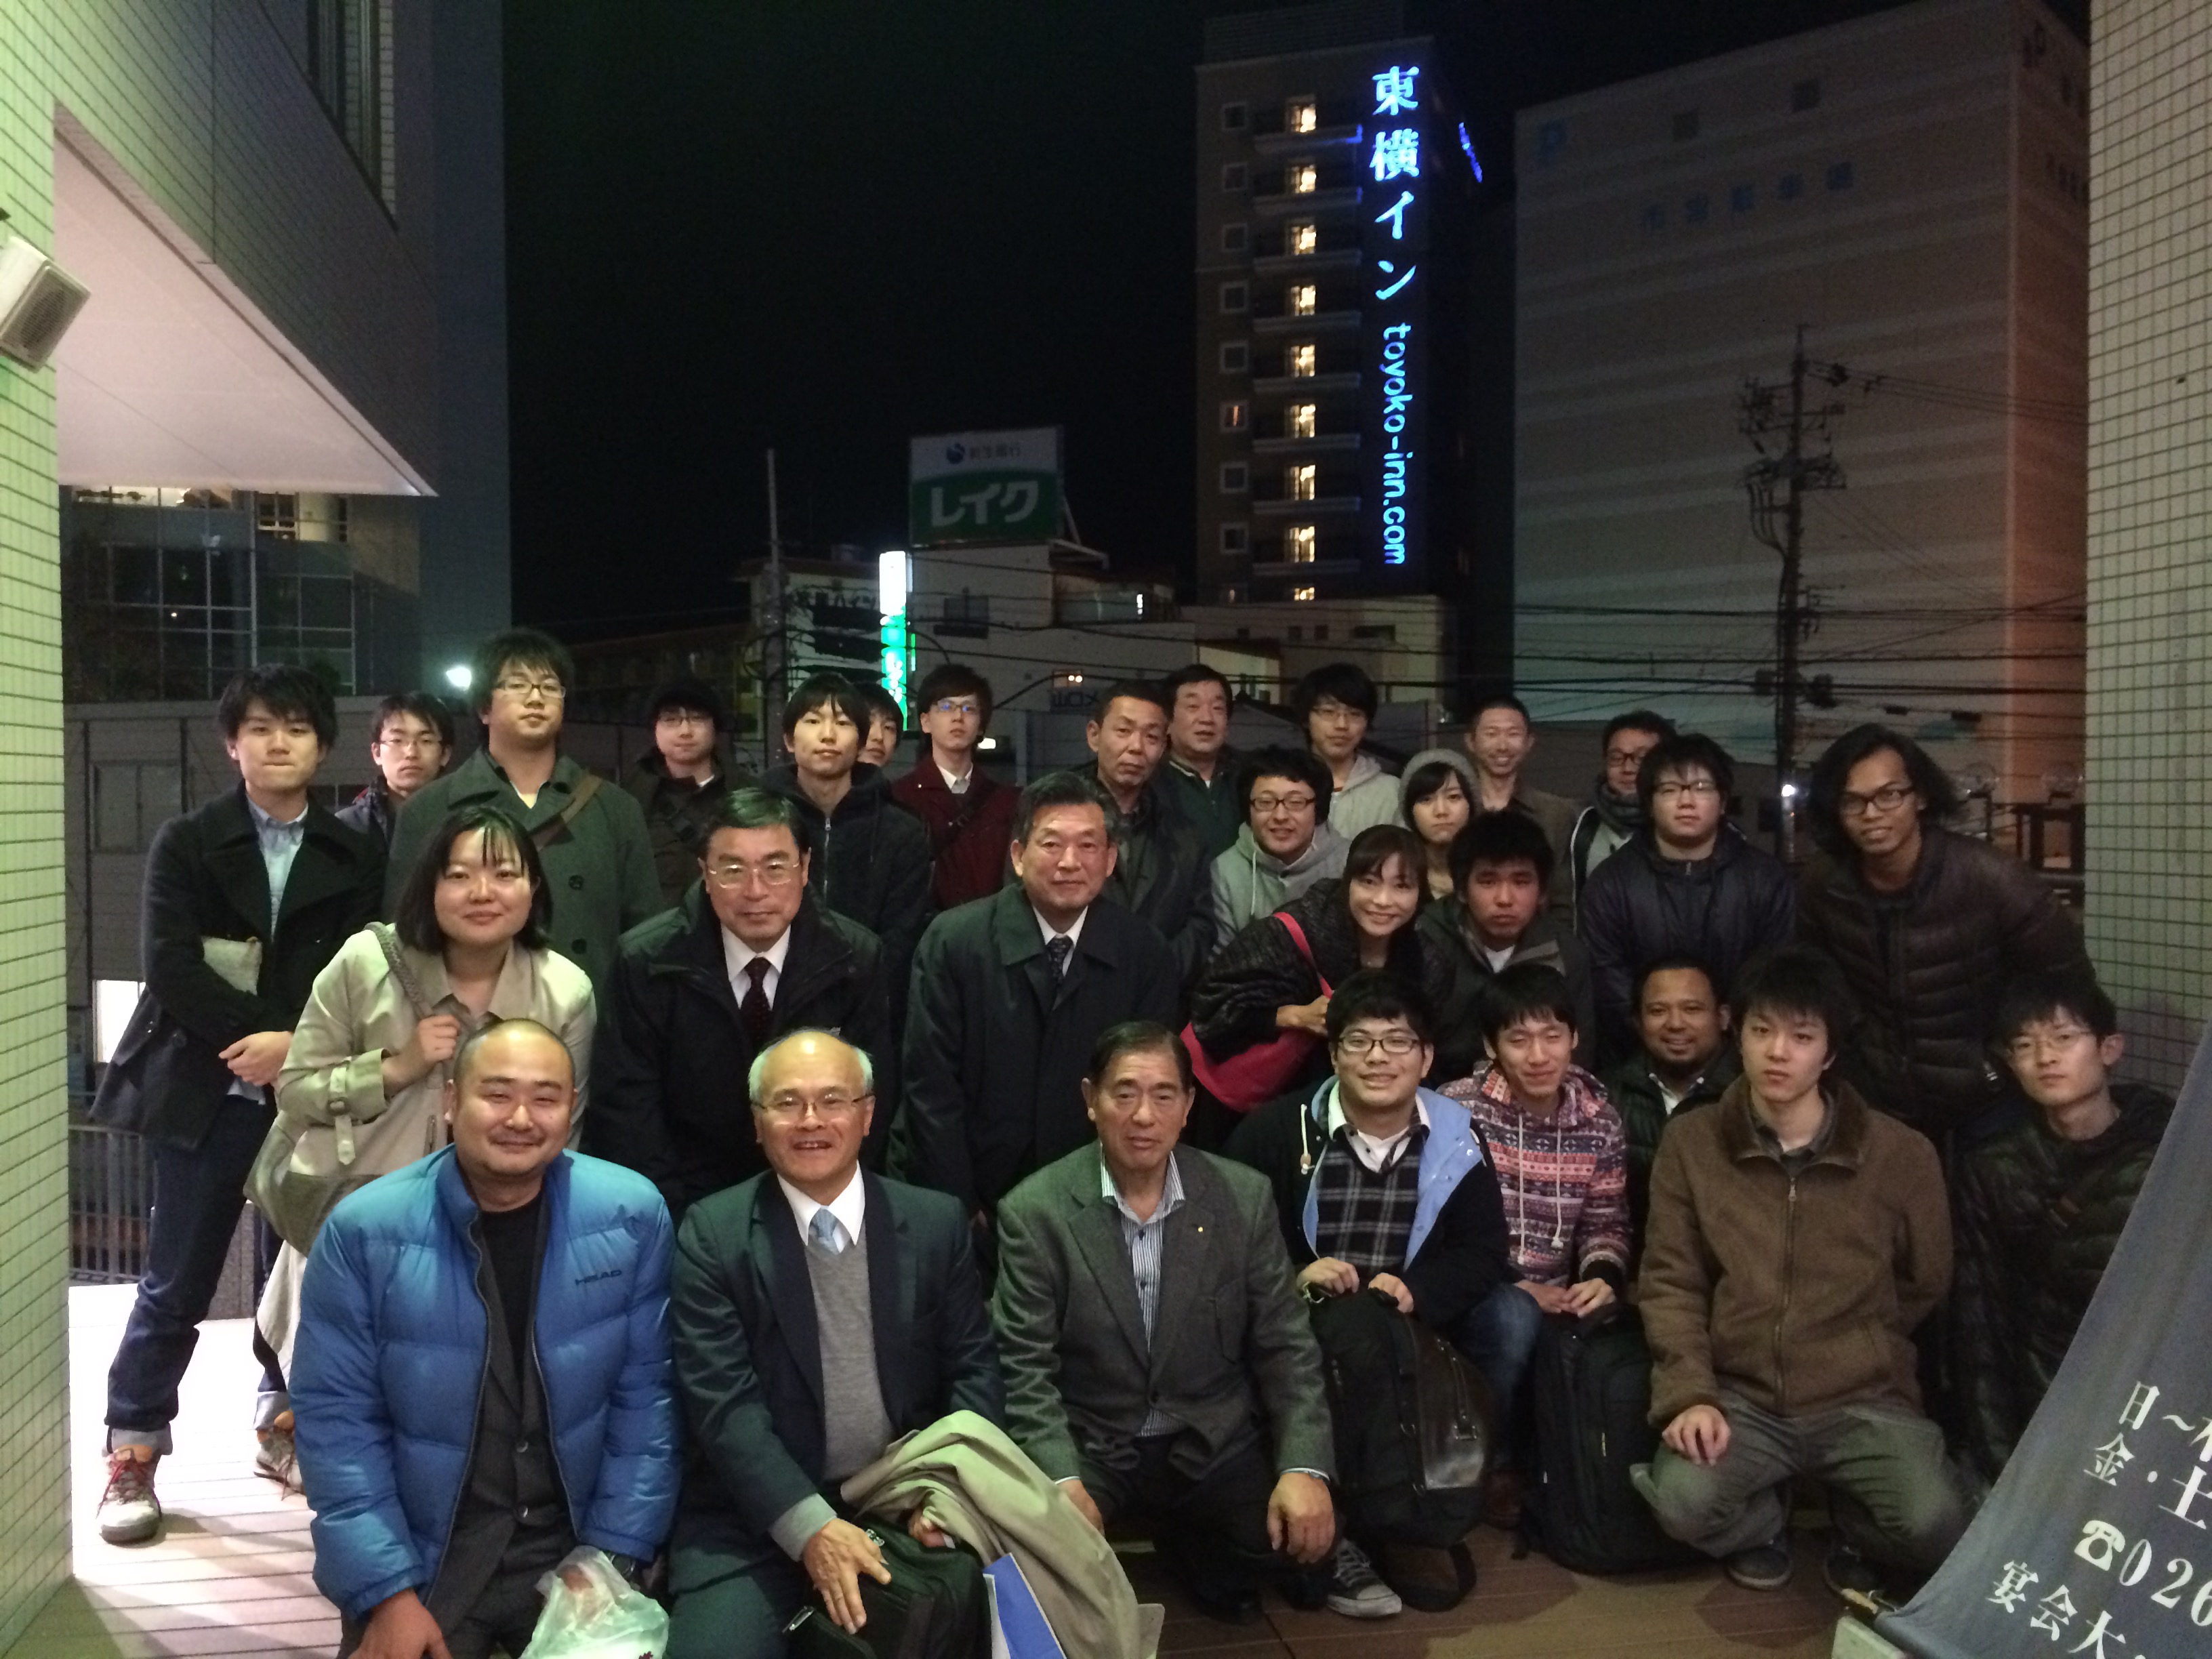 http://www.shinshu-u.ac.jp/faculty/engineering/chair/elec005/news/images/2014-11-22%2021.04.26.jpg